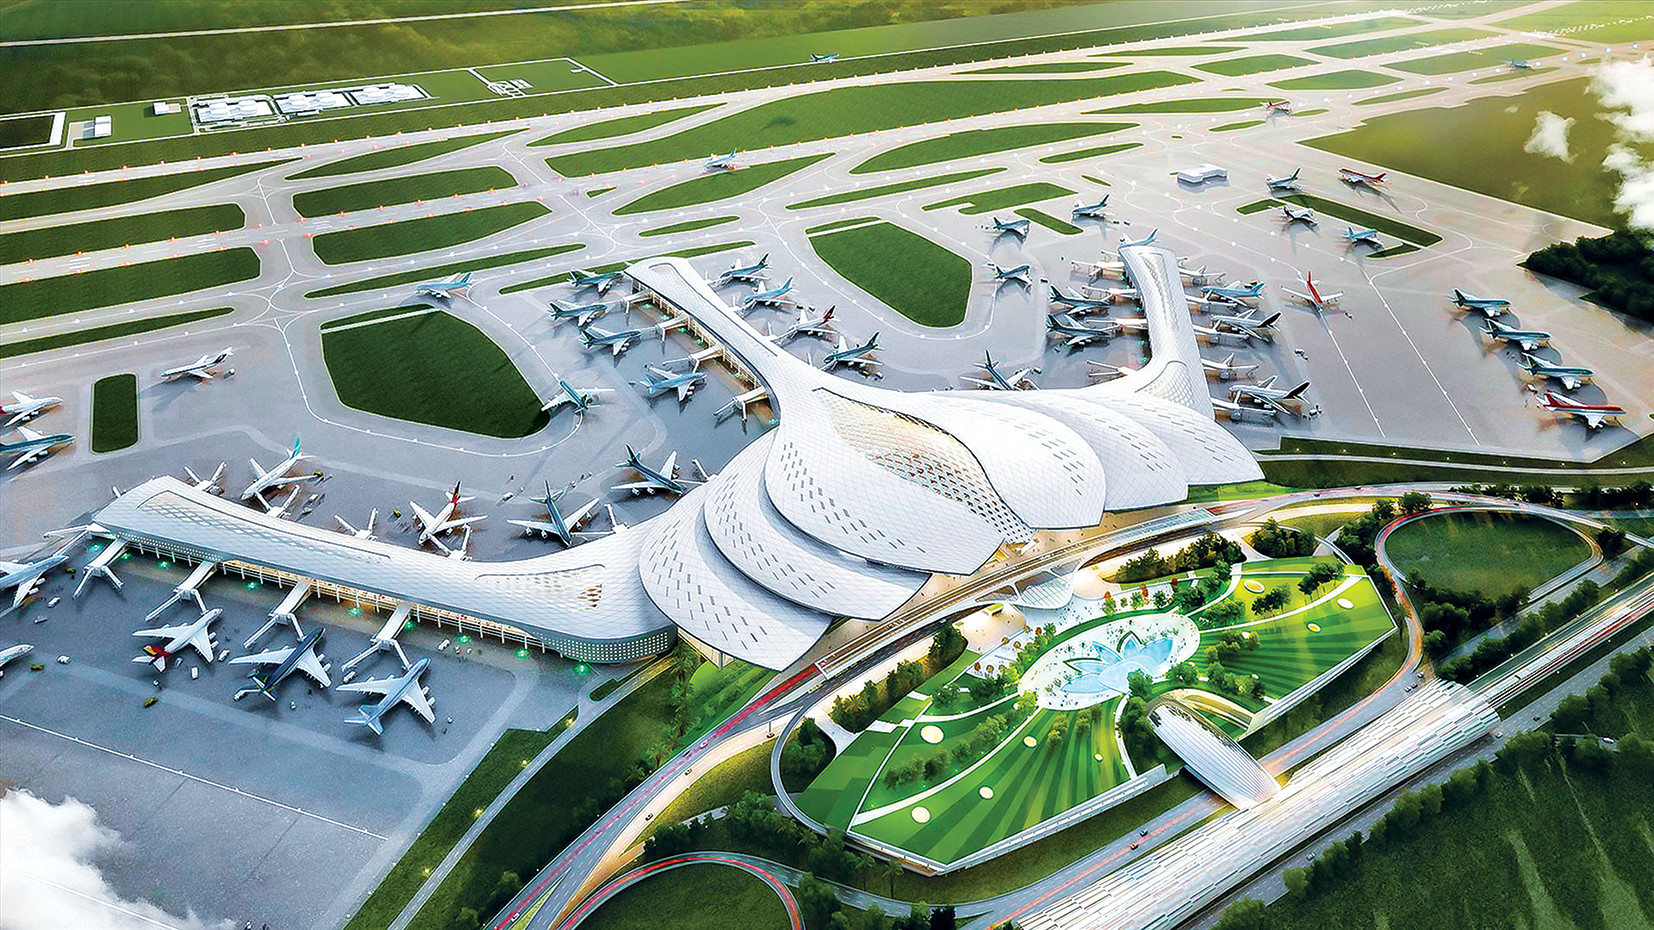 Sân bay Long Thành - Mời bạn cùng xem hình ảnh về sân bay Long Thành đầy ấn tượng và hiện đại. Với quy mô lớn và hệ thống cơ sở hạ tầng tiên tiến, sân bay Long Thành sẽ là nơi đón tiếp hàng triệu du khách từ khắp nơi trên thế giới. Hãy cùng trải nghiệm không khí sôi động tại sân bay này nhé!